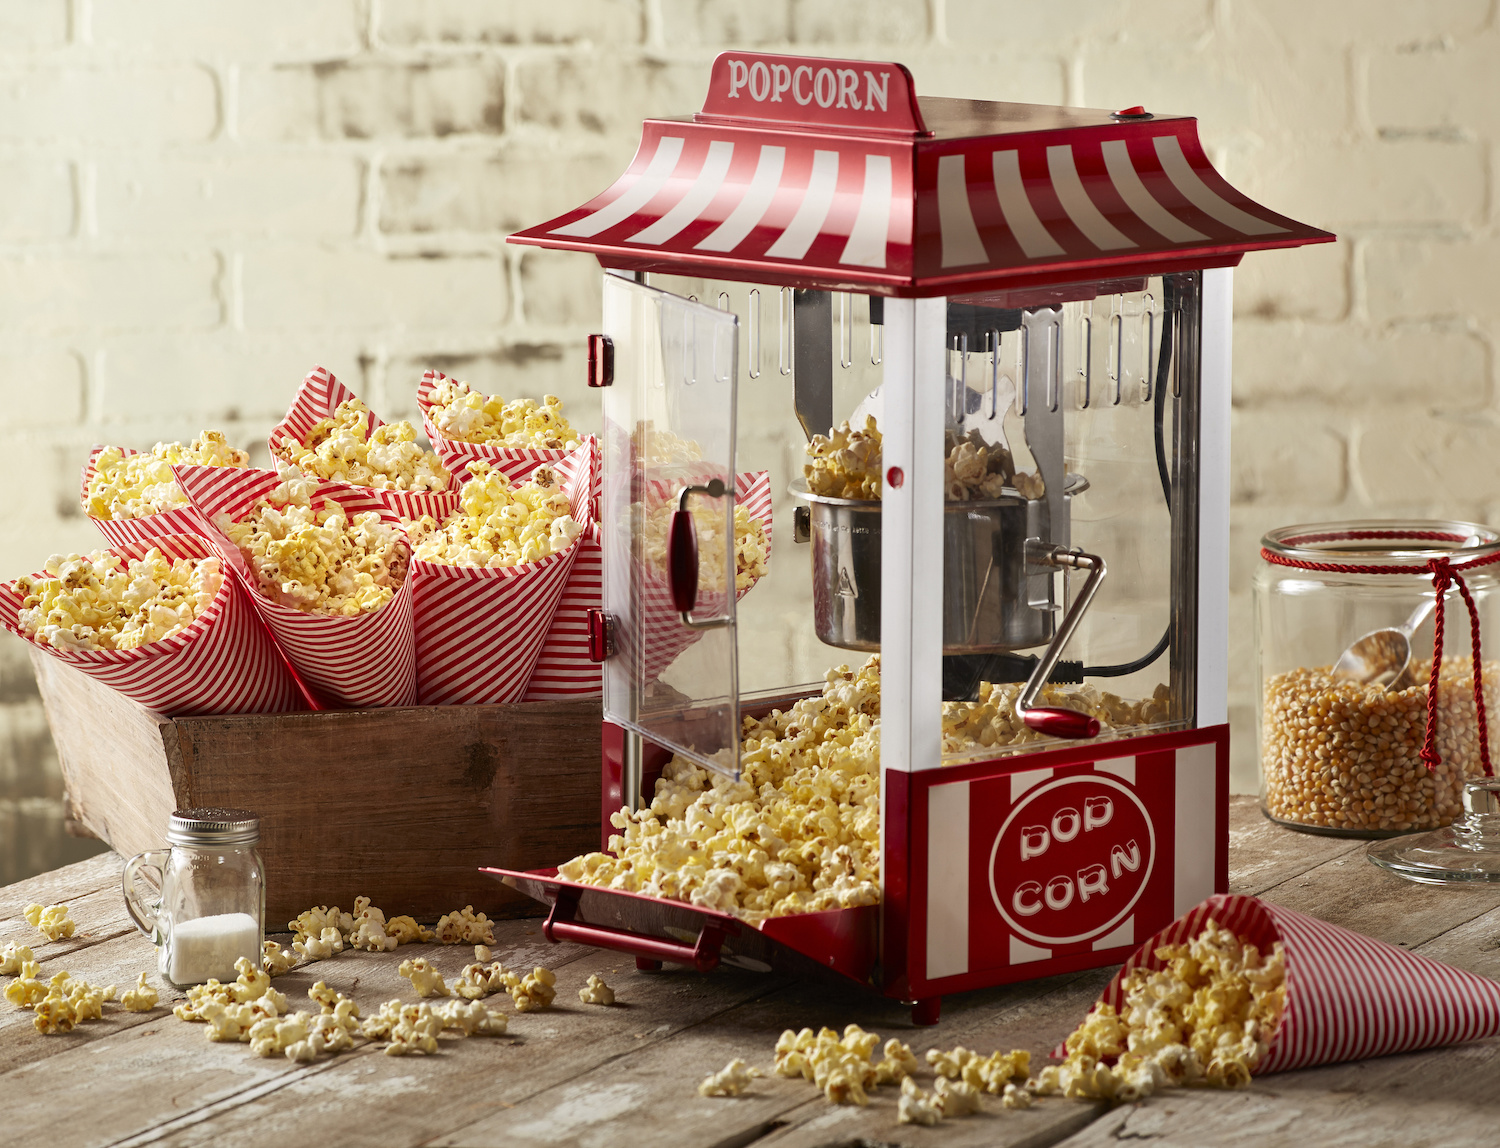 Popcorn Business In Uganda